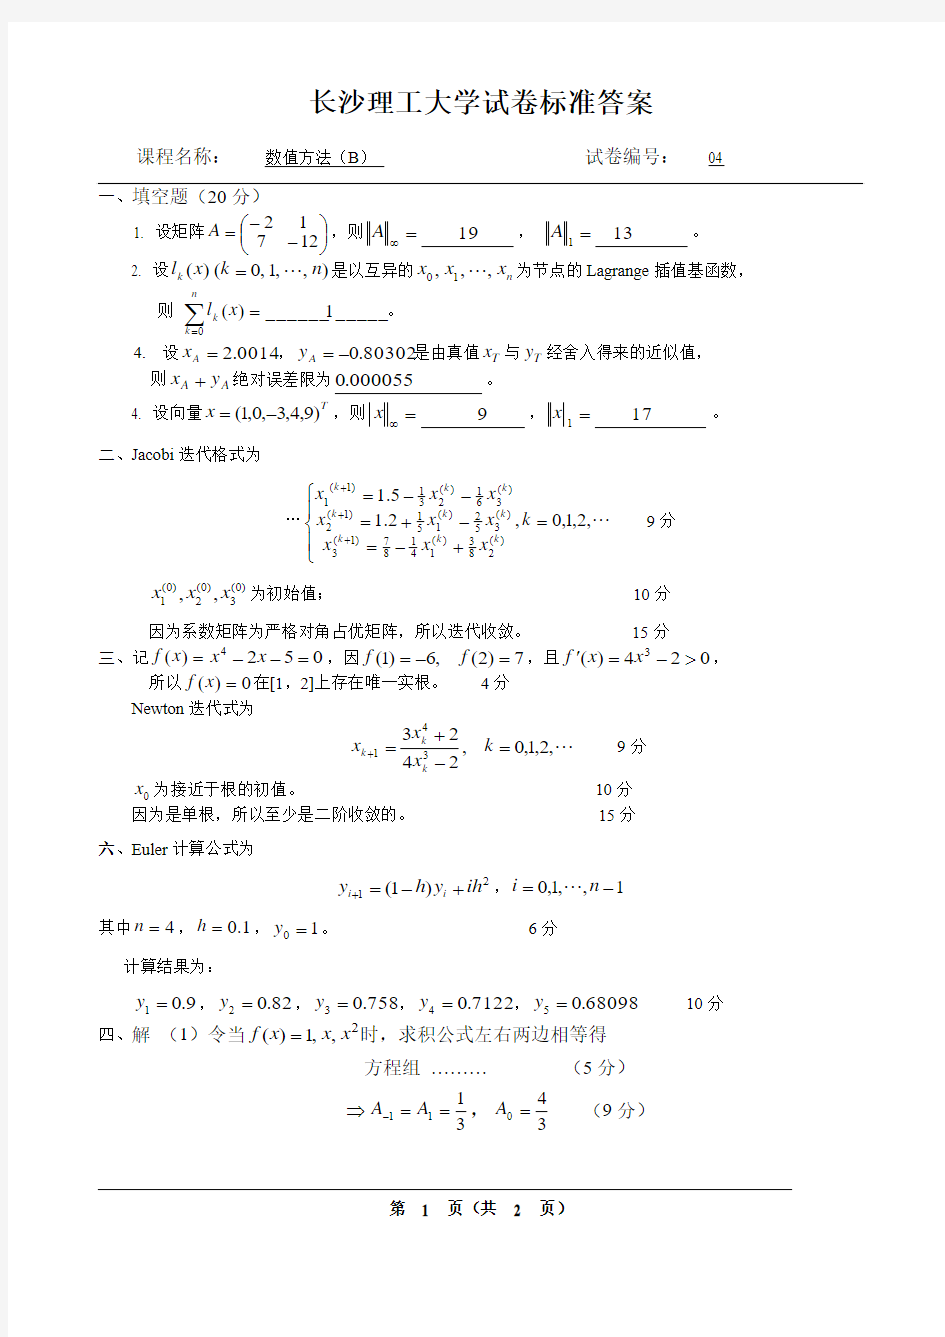 长沙理工大学数值方法考试试卷(本科)